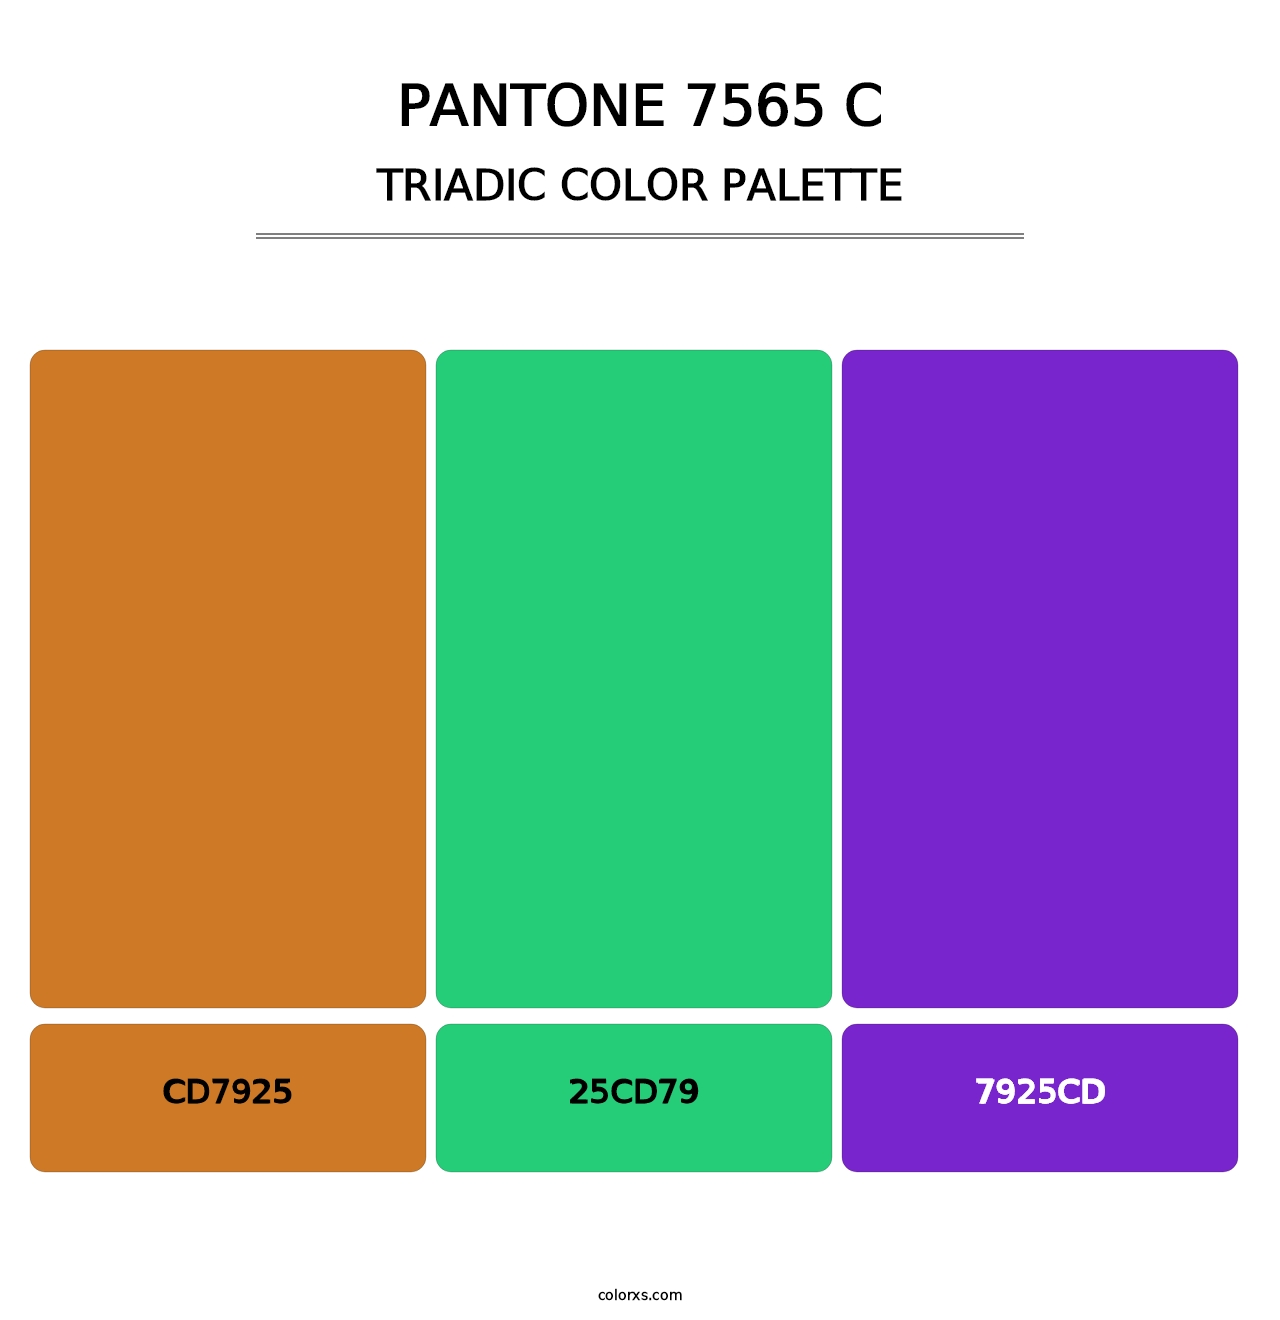 PANTONE 7565 C - Triadic Color Palette